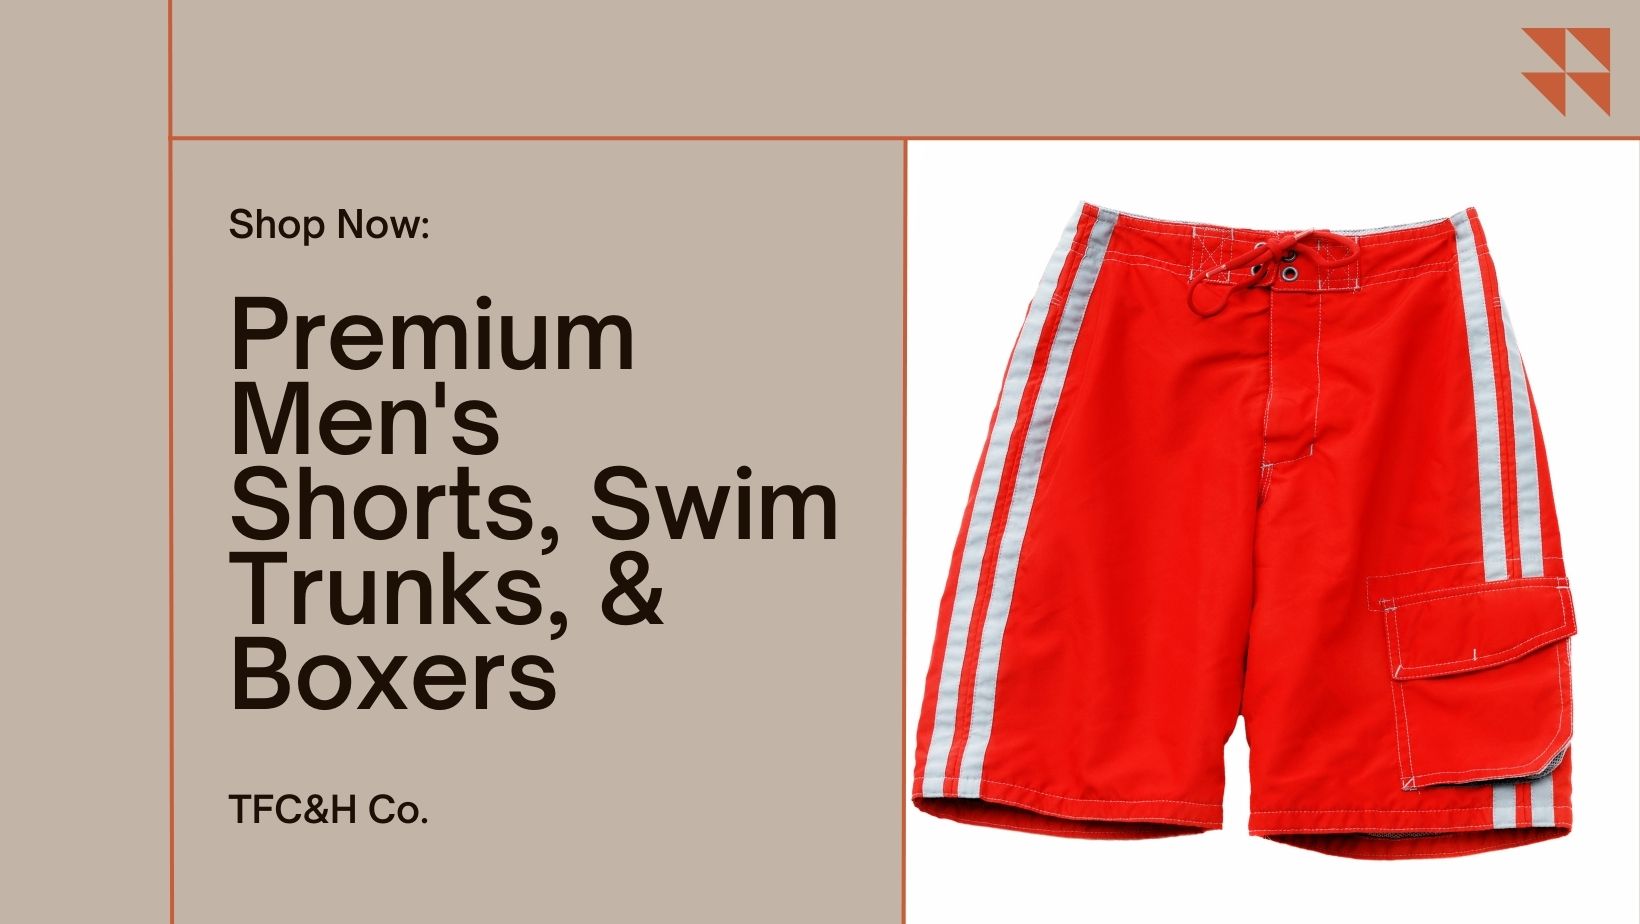 "Premium Men's Shorts, Swim Trunks, & Boxers